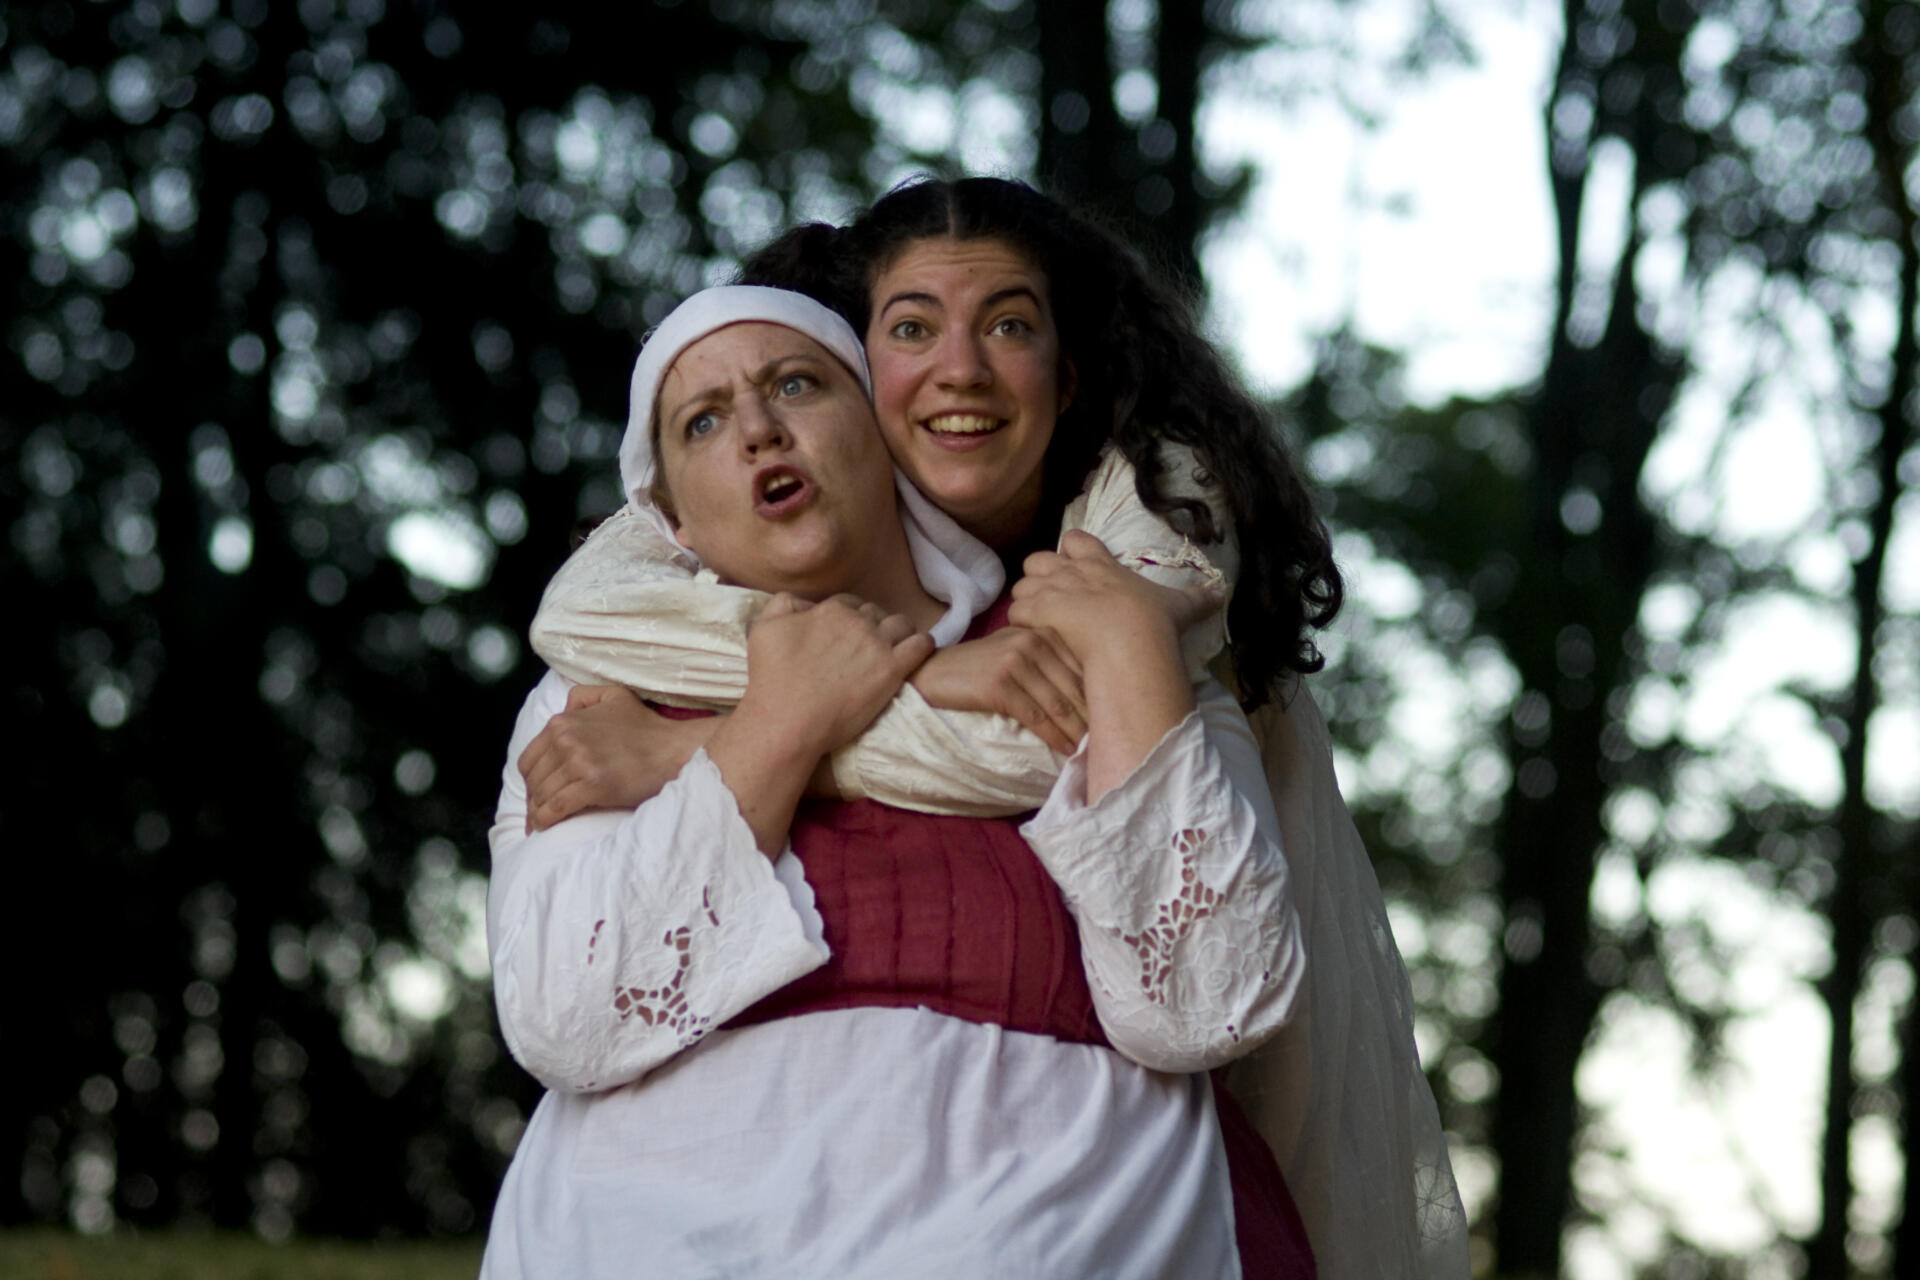 Mari Geasair and Carolyn Marie Monroe in Romeo and Juliet - 2010